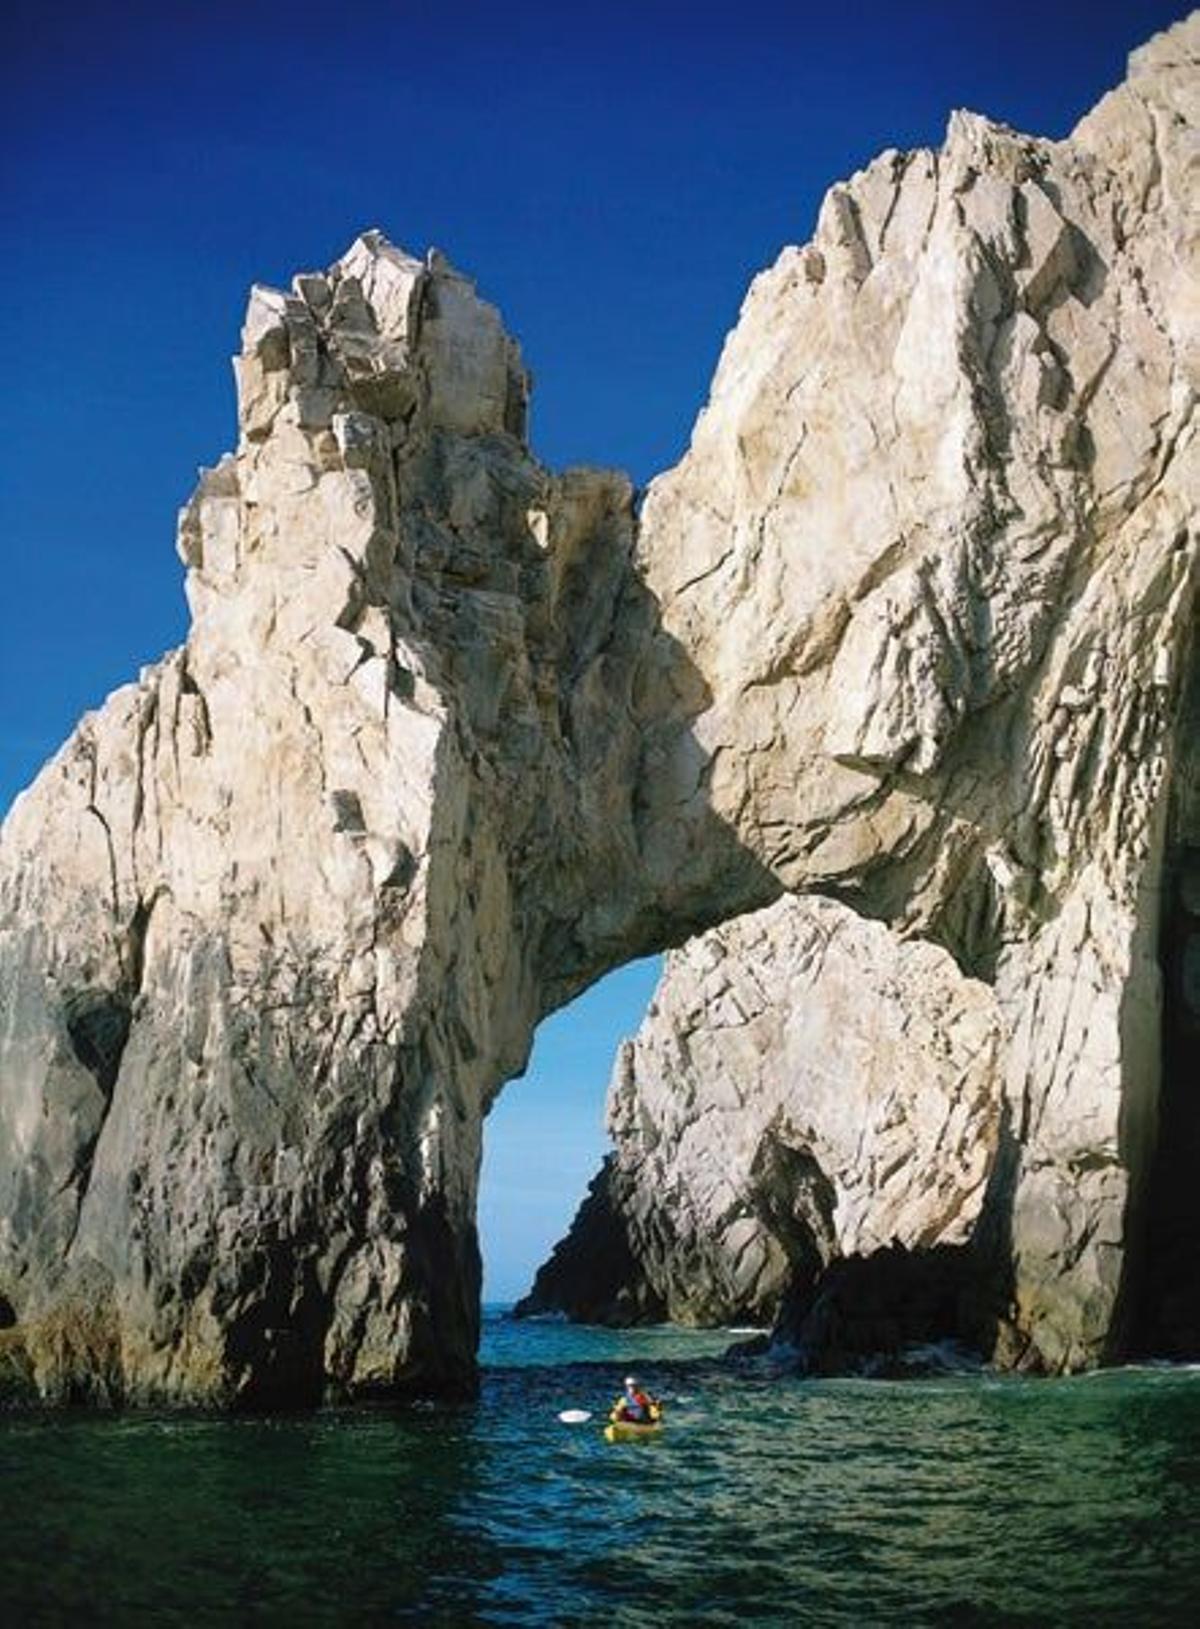 Bajo el agua, junto al Arco, un agujero en la roca creado por la erosión del mar que es un símbolo